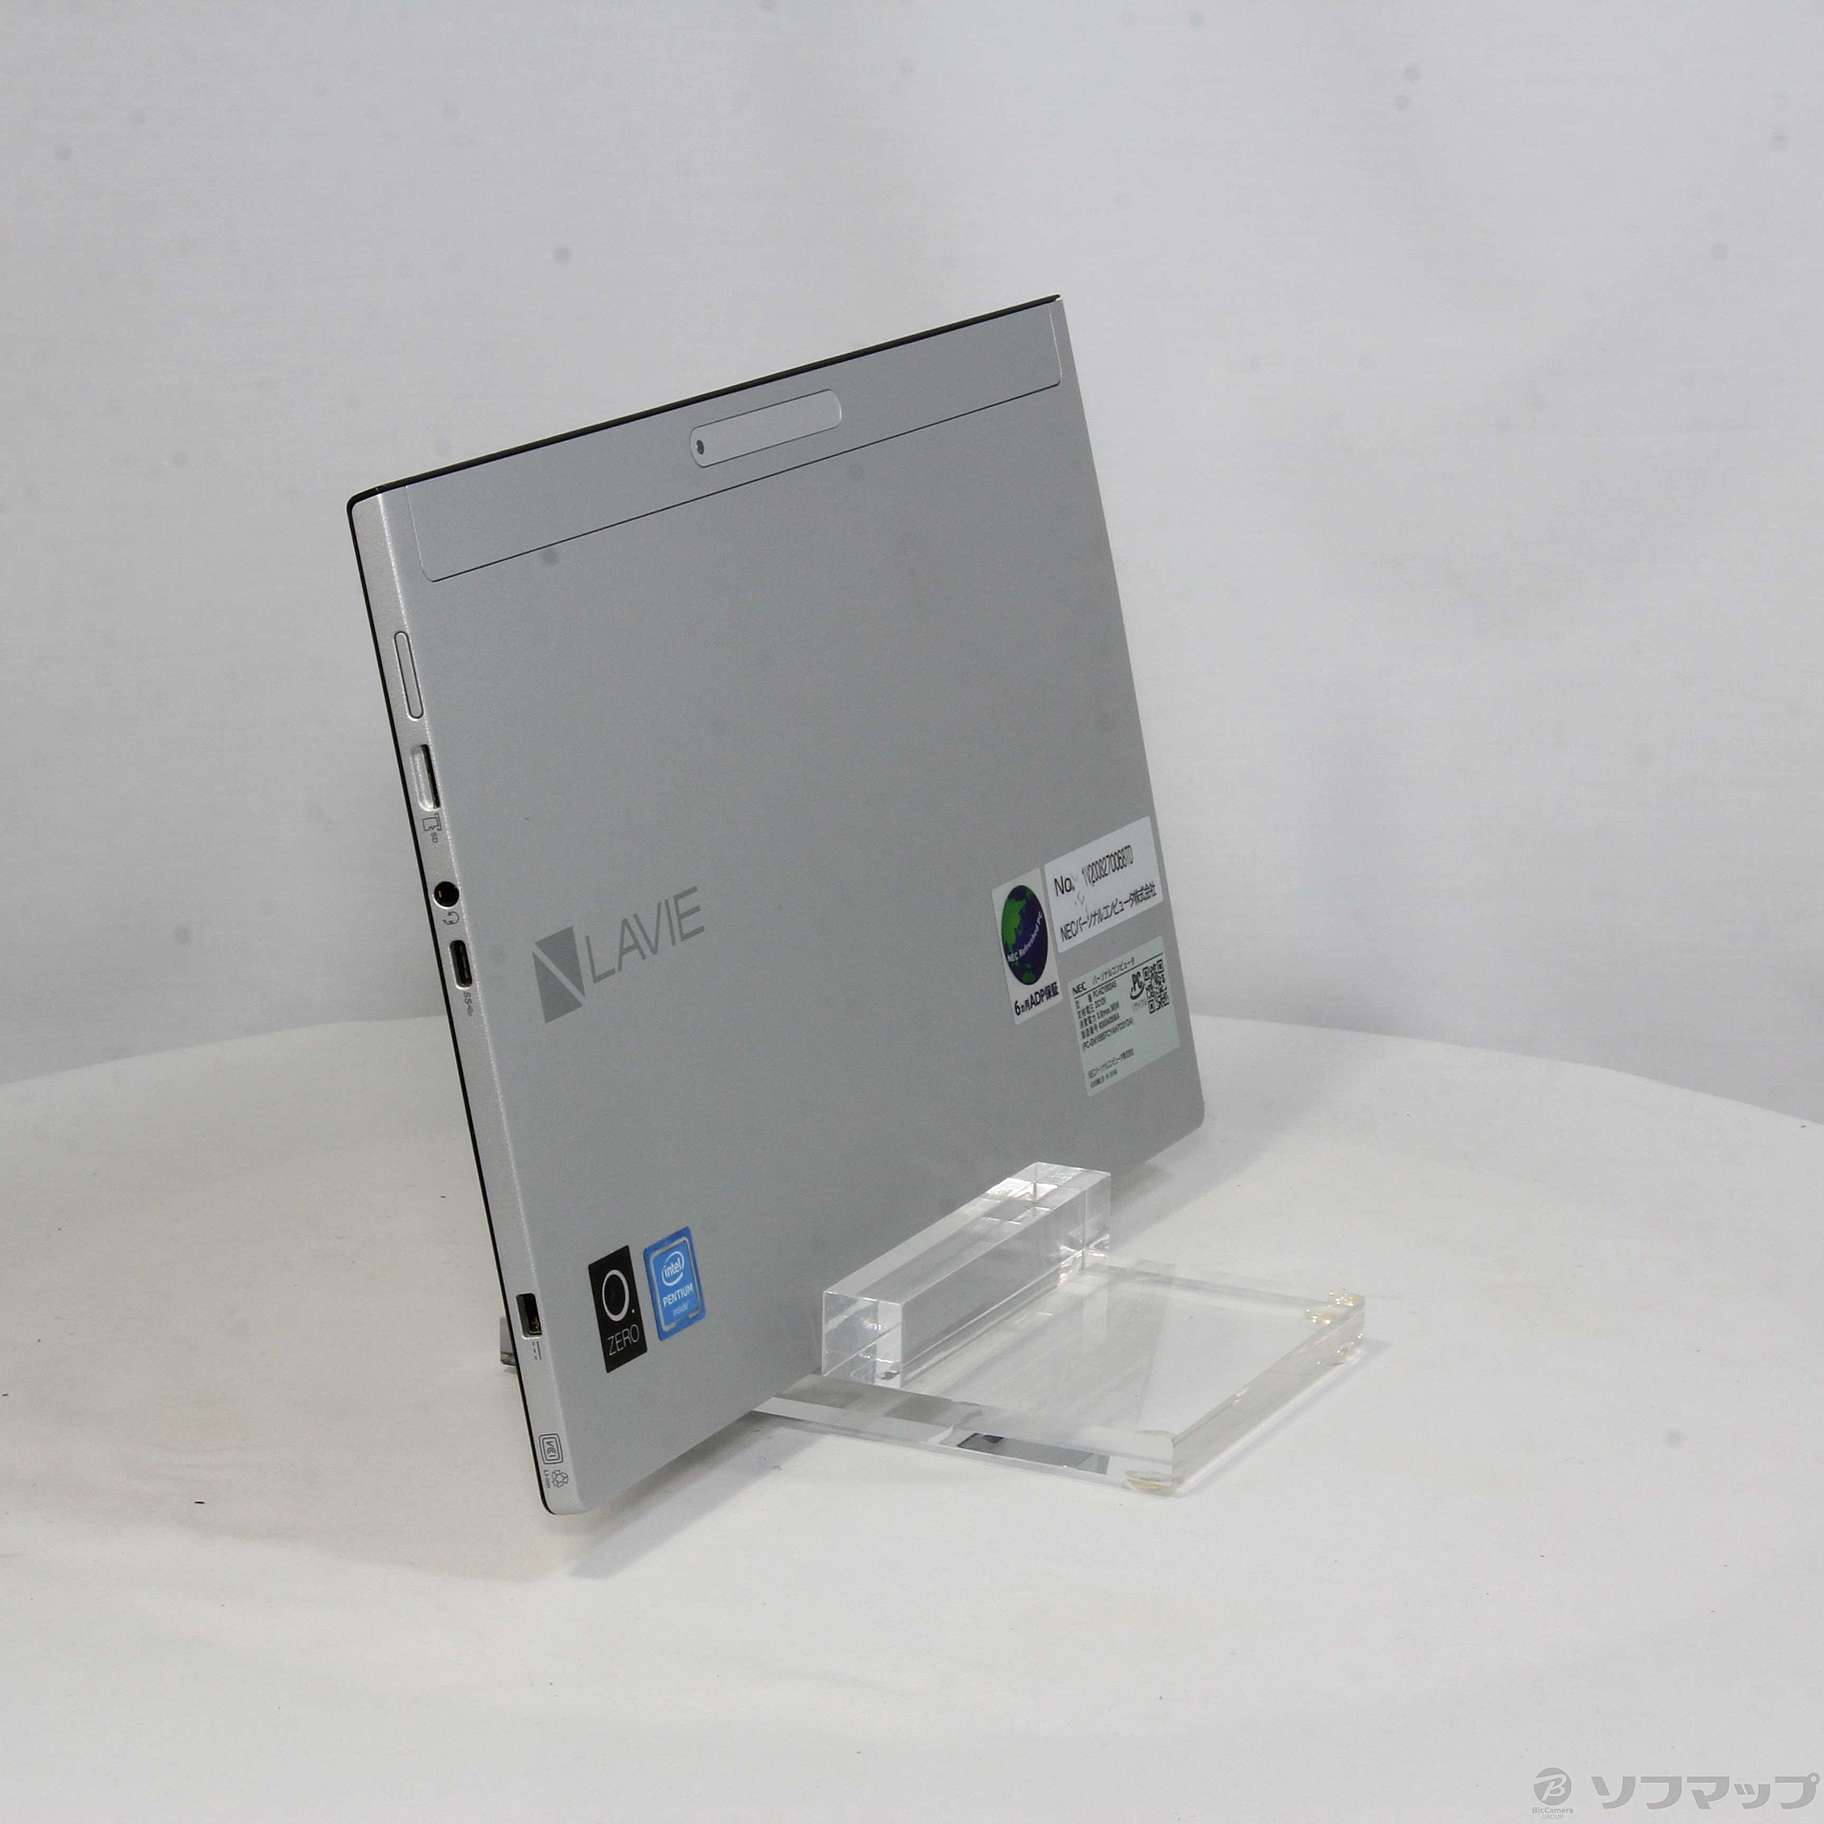 セール対象品 LaVie Hybrid ZERO PC-HZ100DAS ムーンシルバー 〔NEC Refreshed PC〕 〔Windows  10〕 ≪メーカー保証あり≫ ◇02/19(土)値下げ！